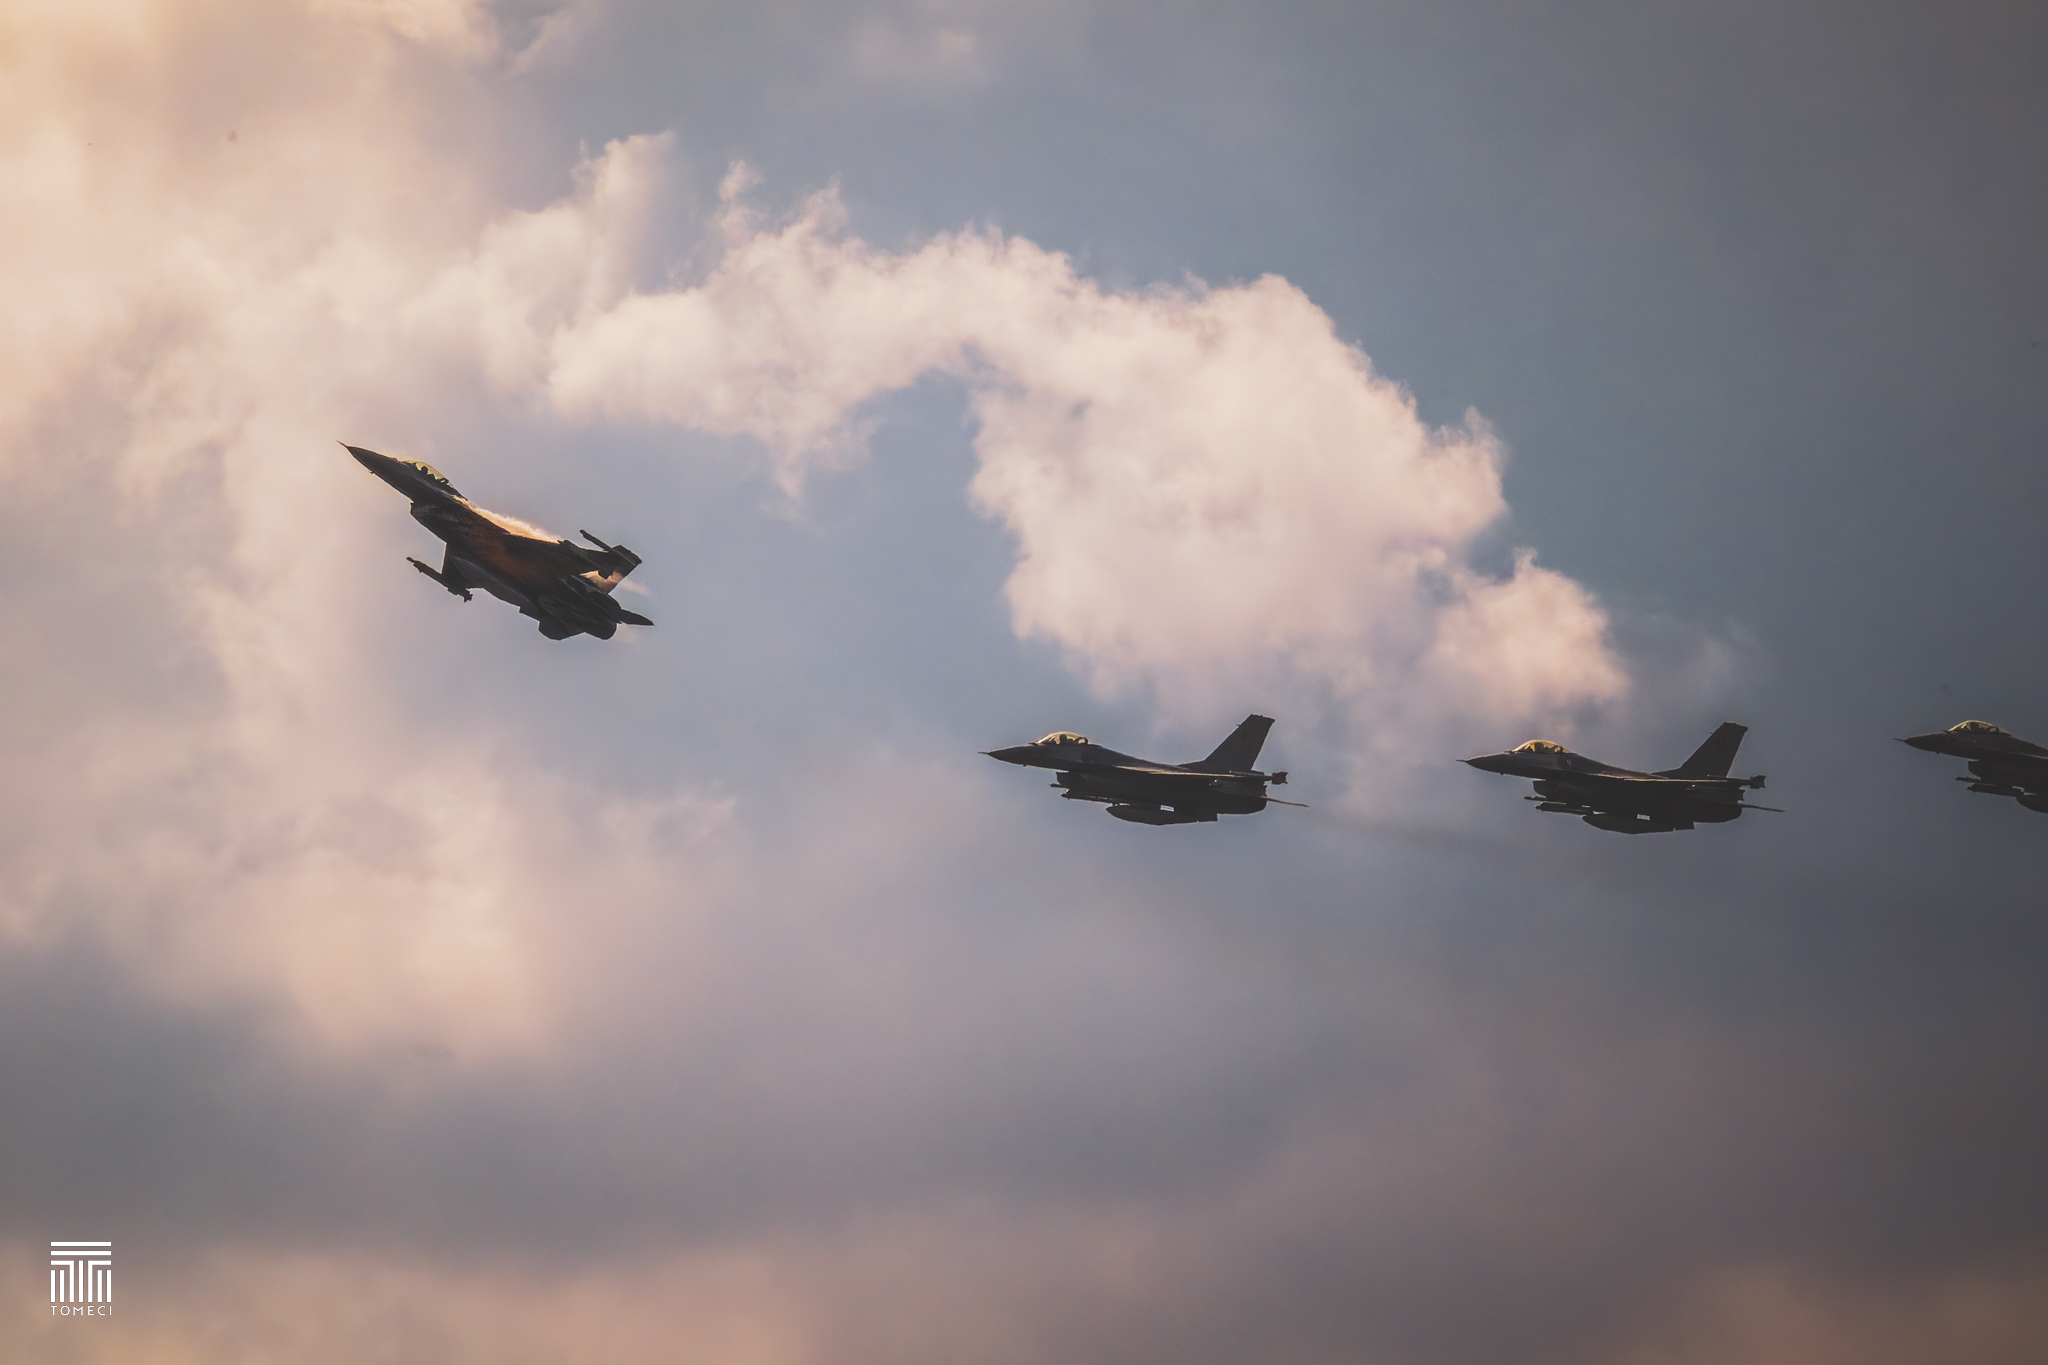 BAF F-16 Viper squadron